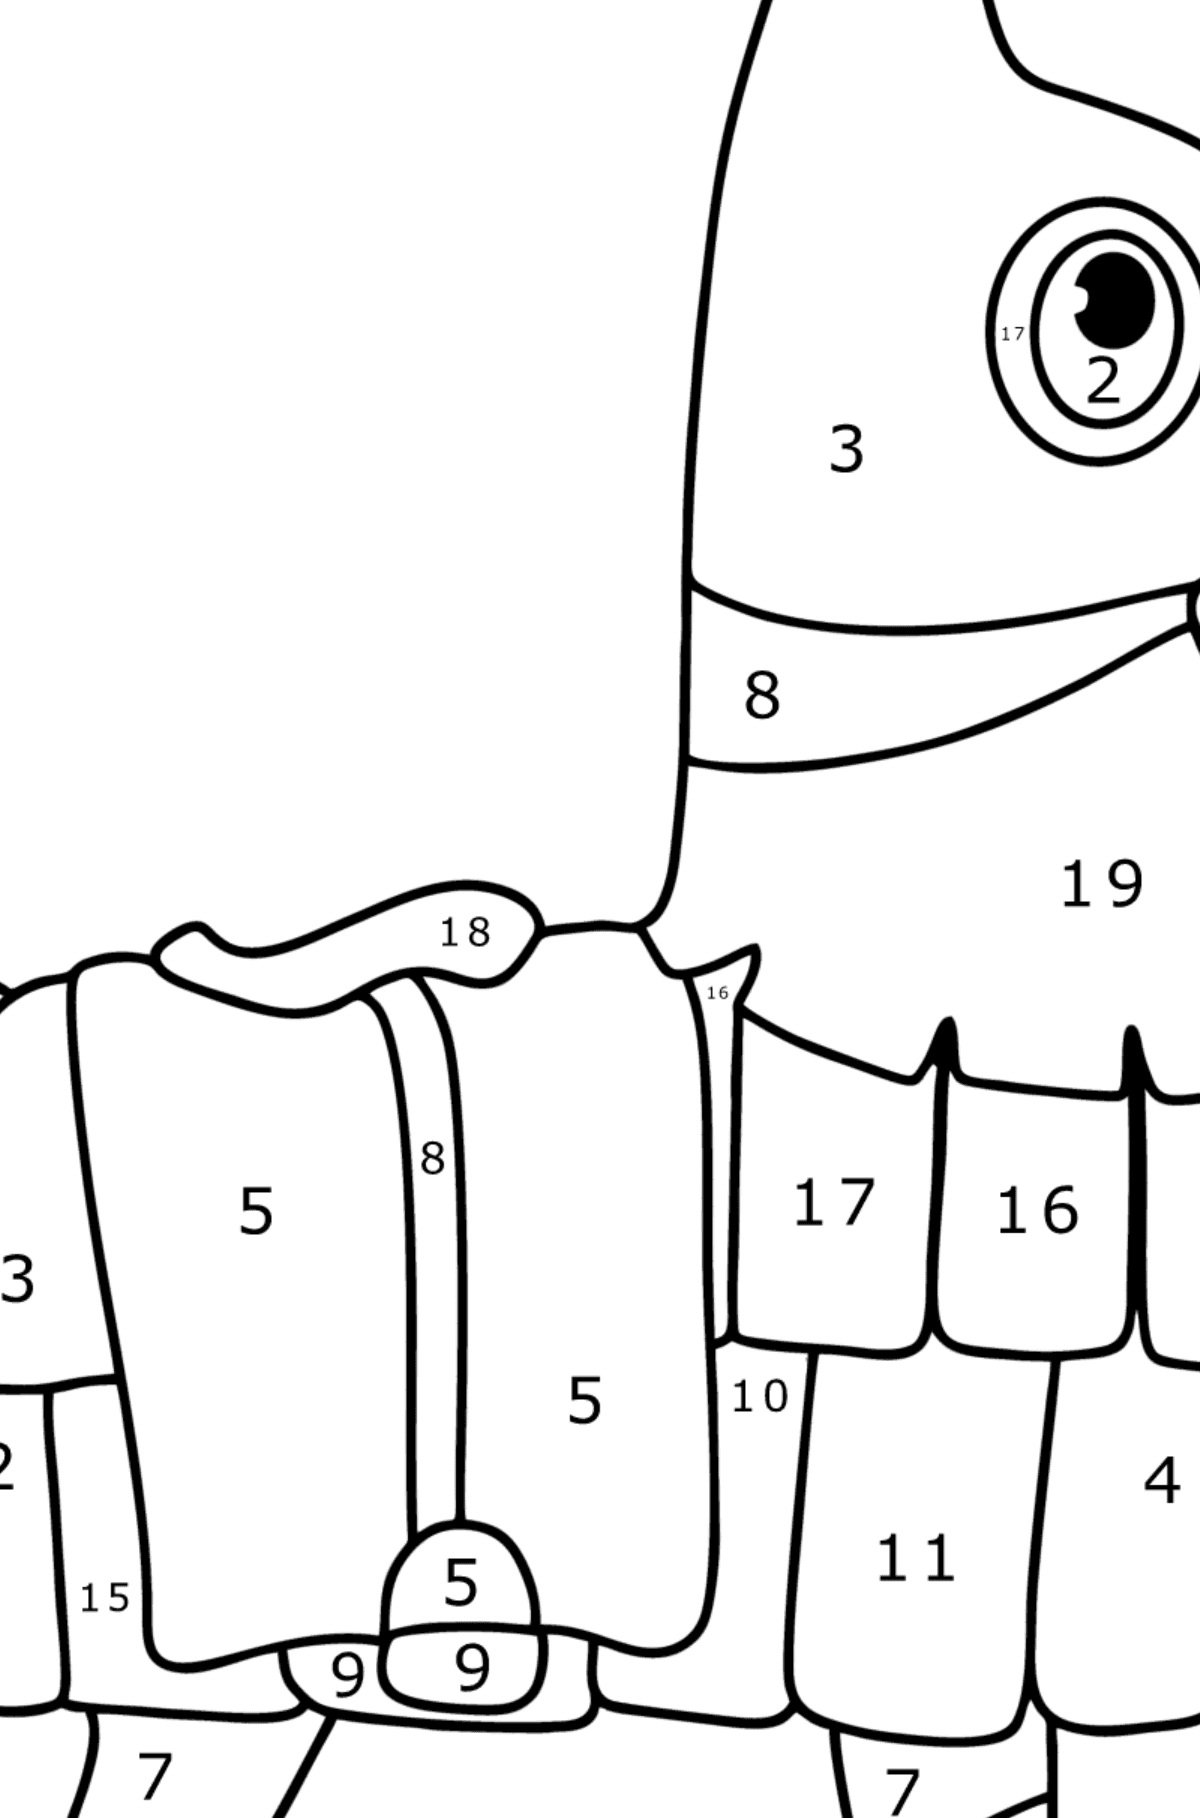 Boyama sayfası Fortnite Llama - Sayılarla Boyama çocuklar için